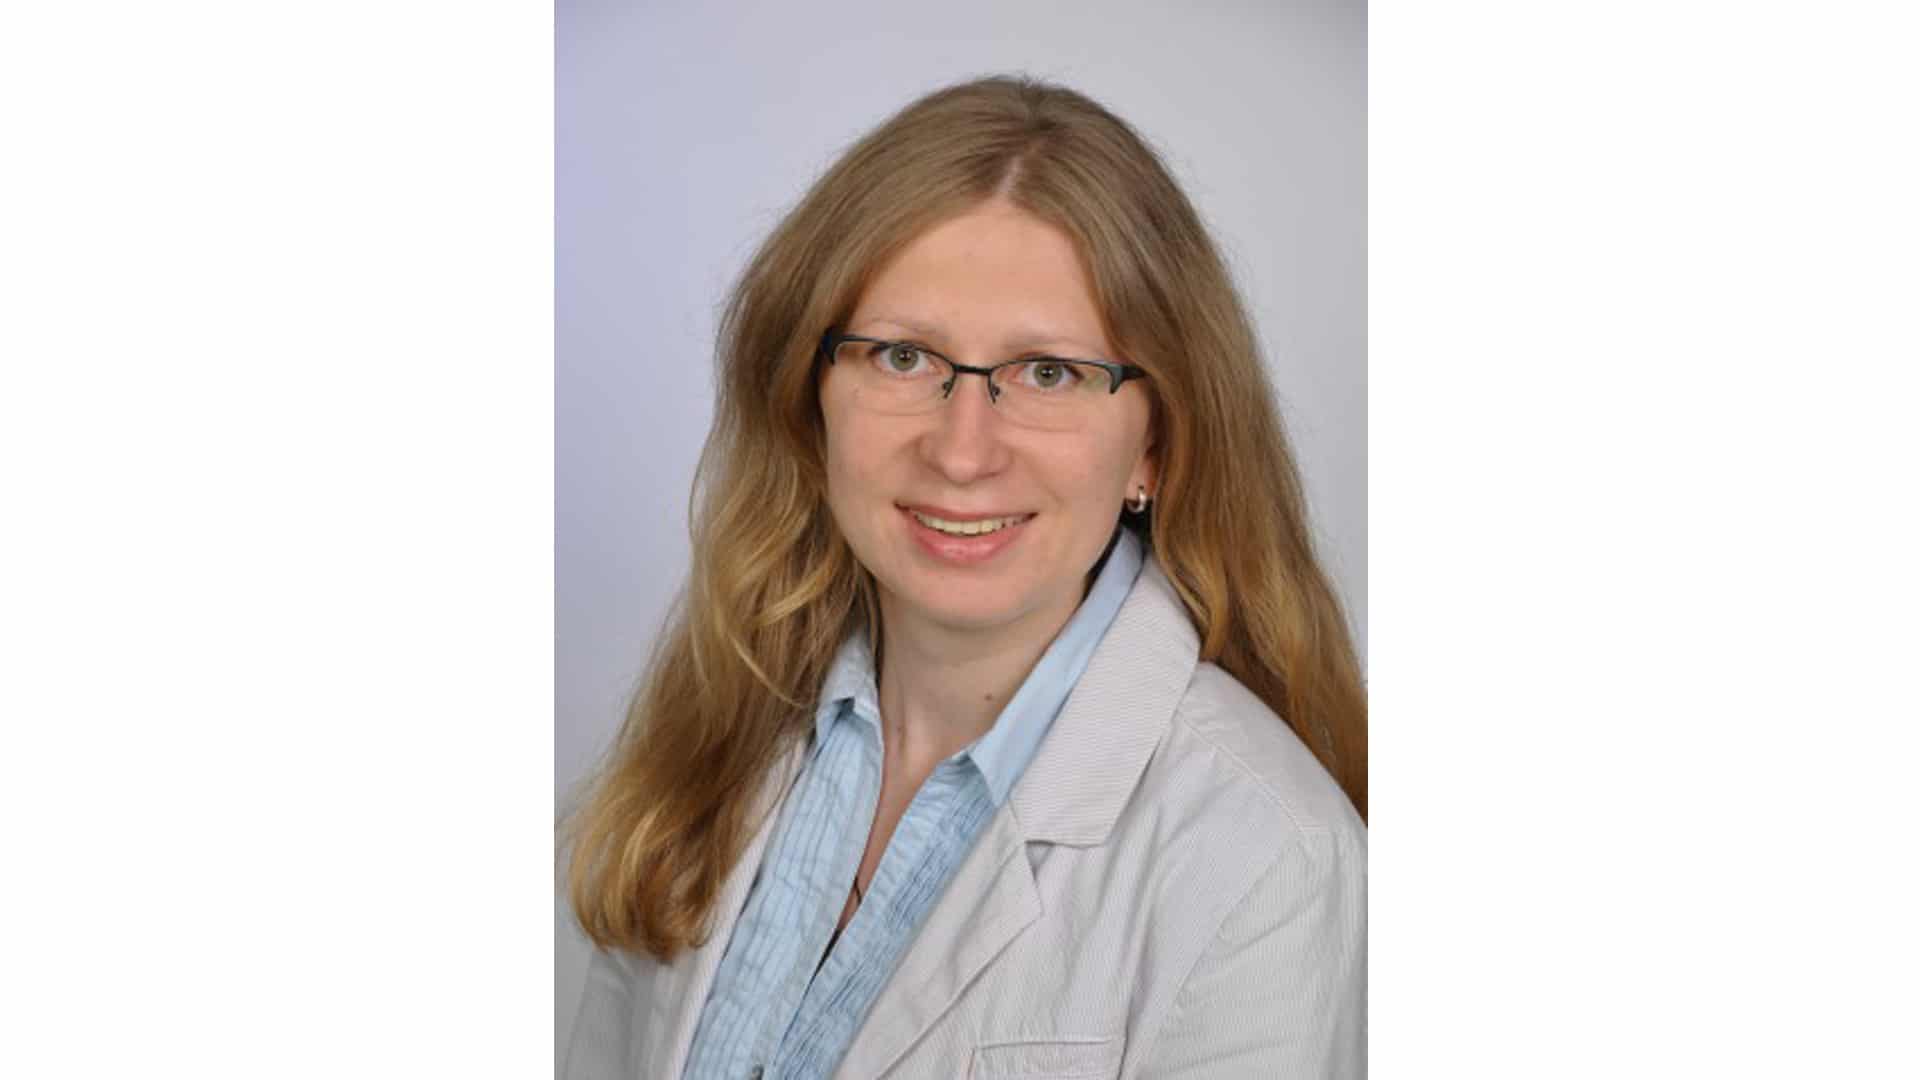 Yauheniya Danilovich arbeitet am Seminar für Praktische Theologie und Religionspädagogik der Universität Münster. Sie stammt aus Weißrussland.